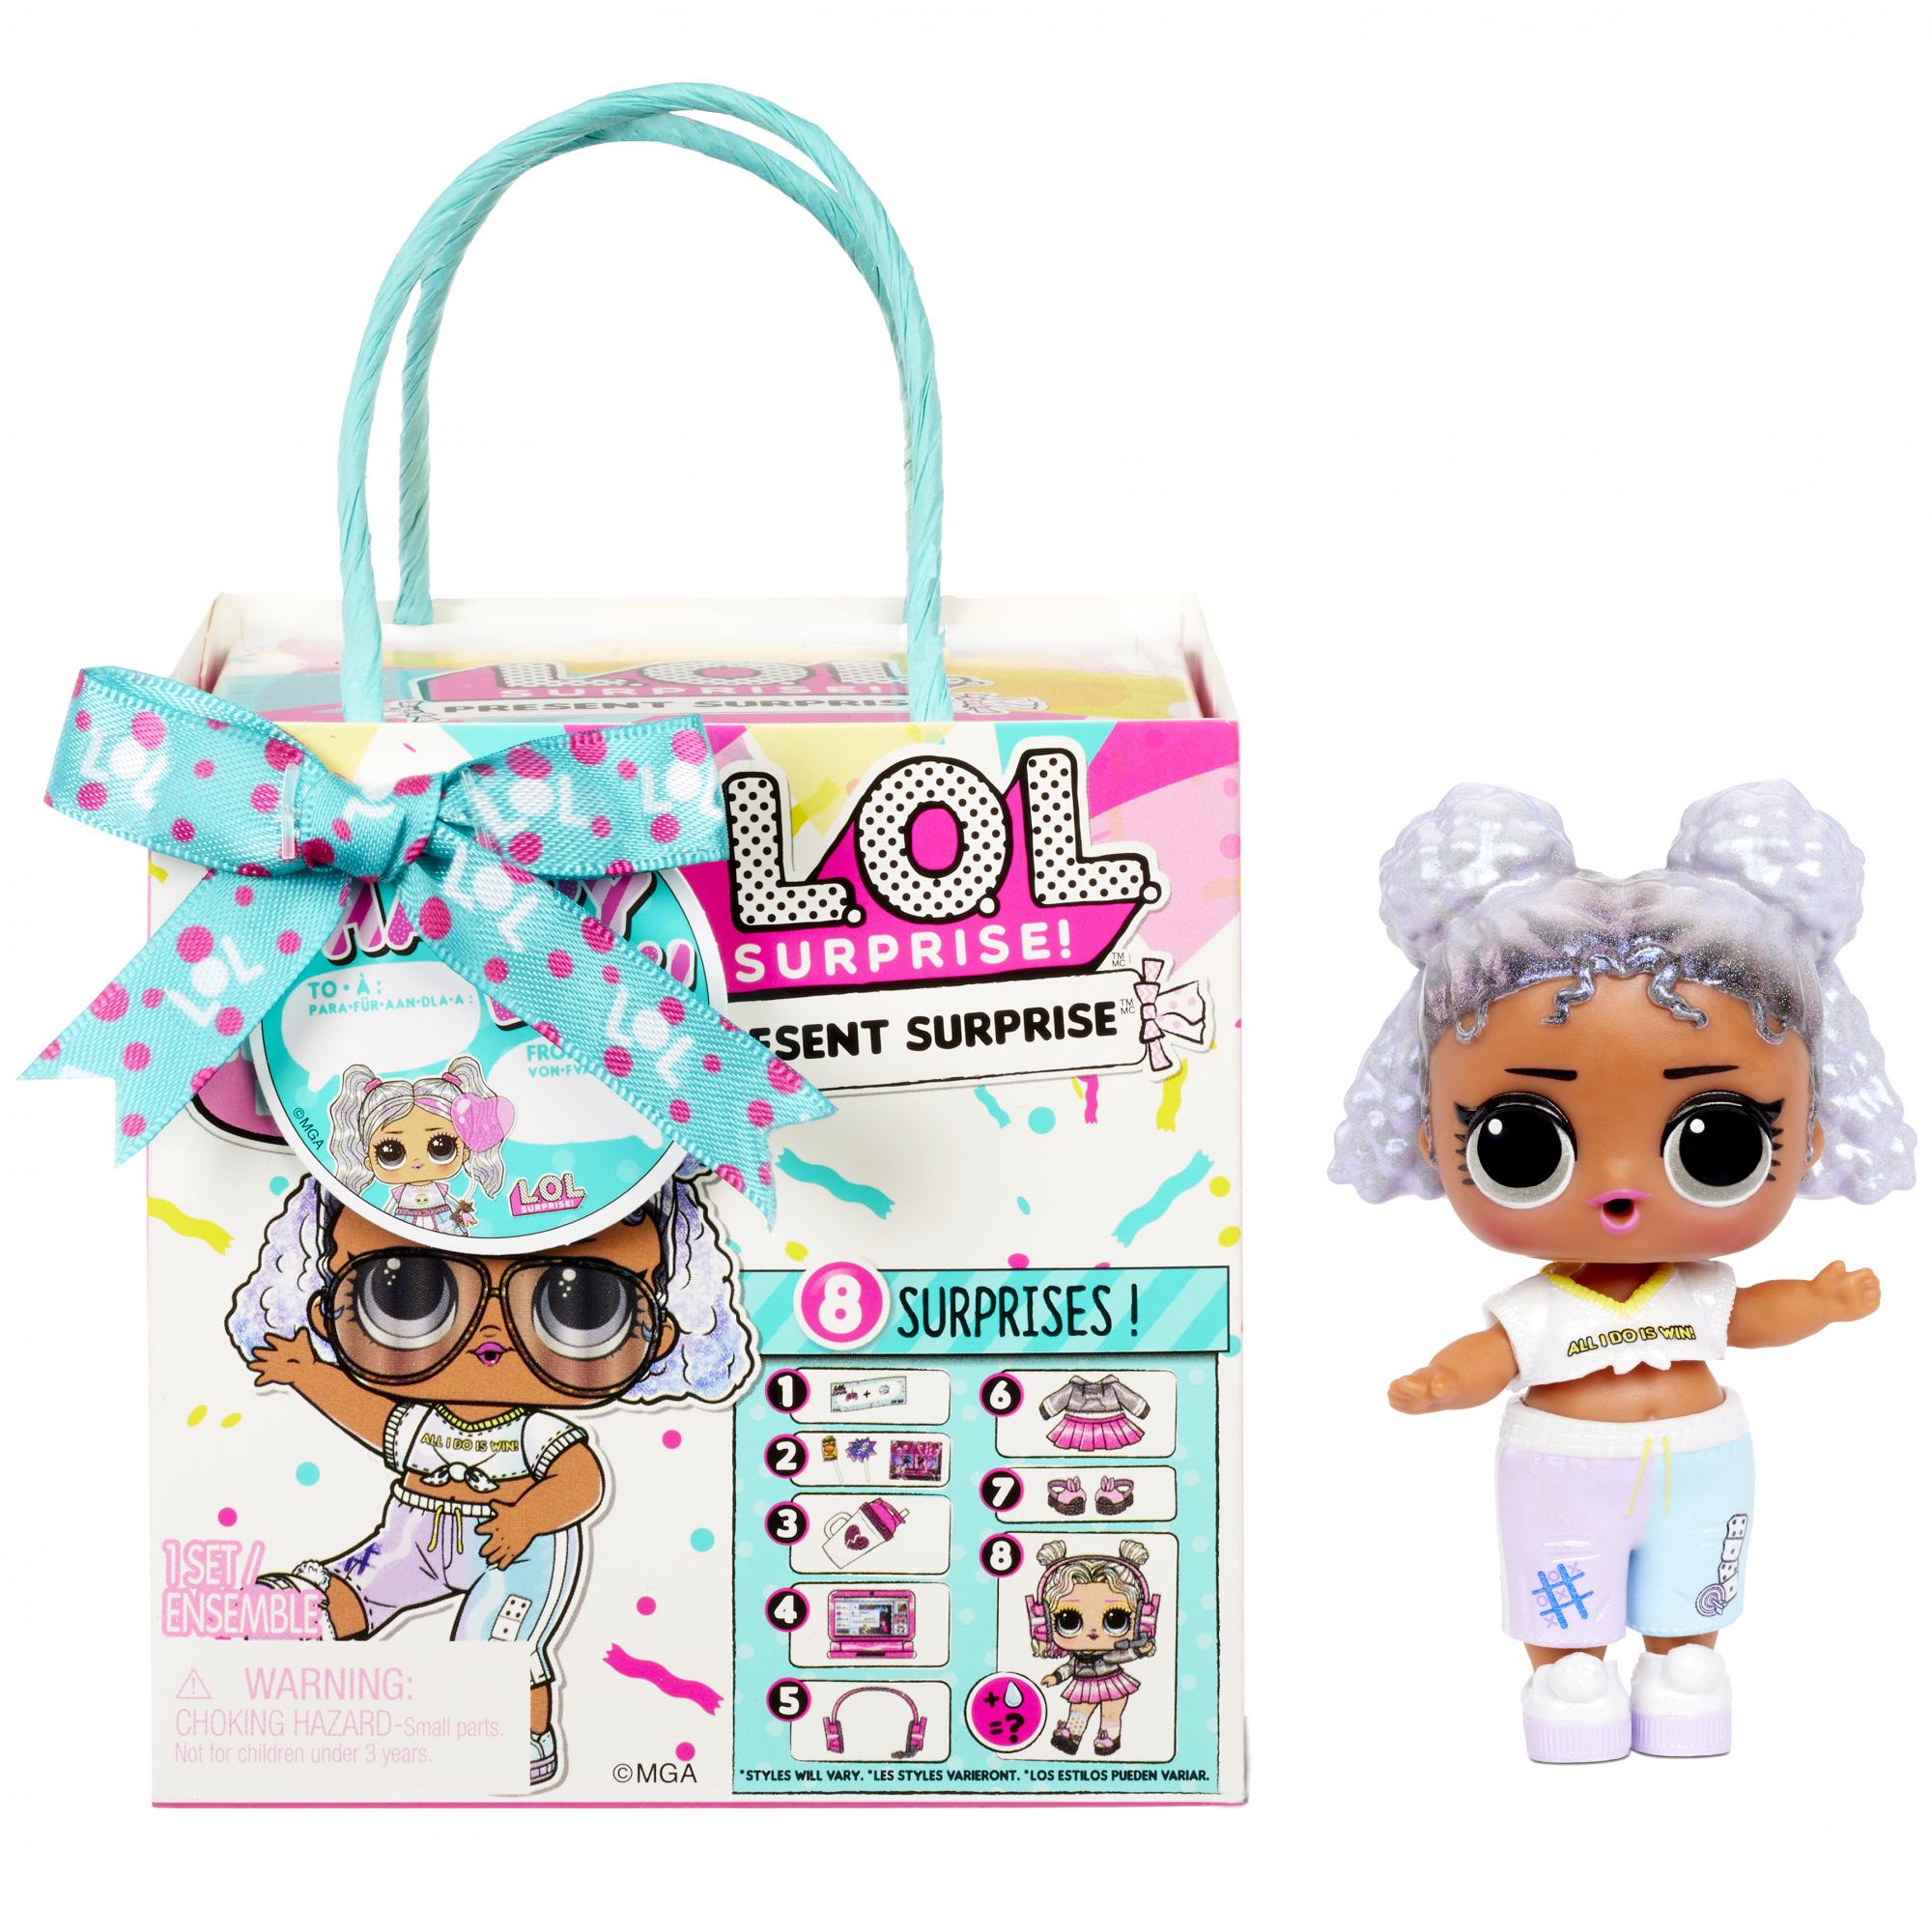 Игрушка-сюрприз L.O.L. Surprise! Кукла Подарок PDQ 3 серия, 576396 кукла nebulous stars isadora серия isadora 38 см